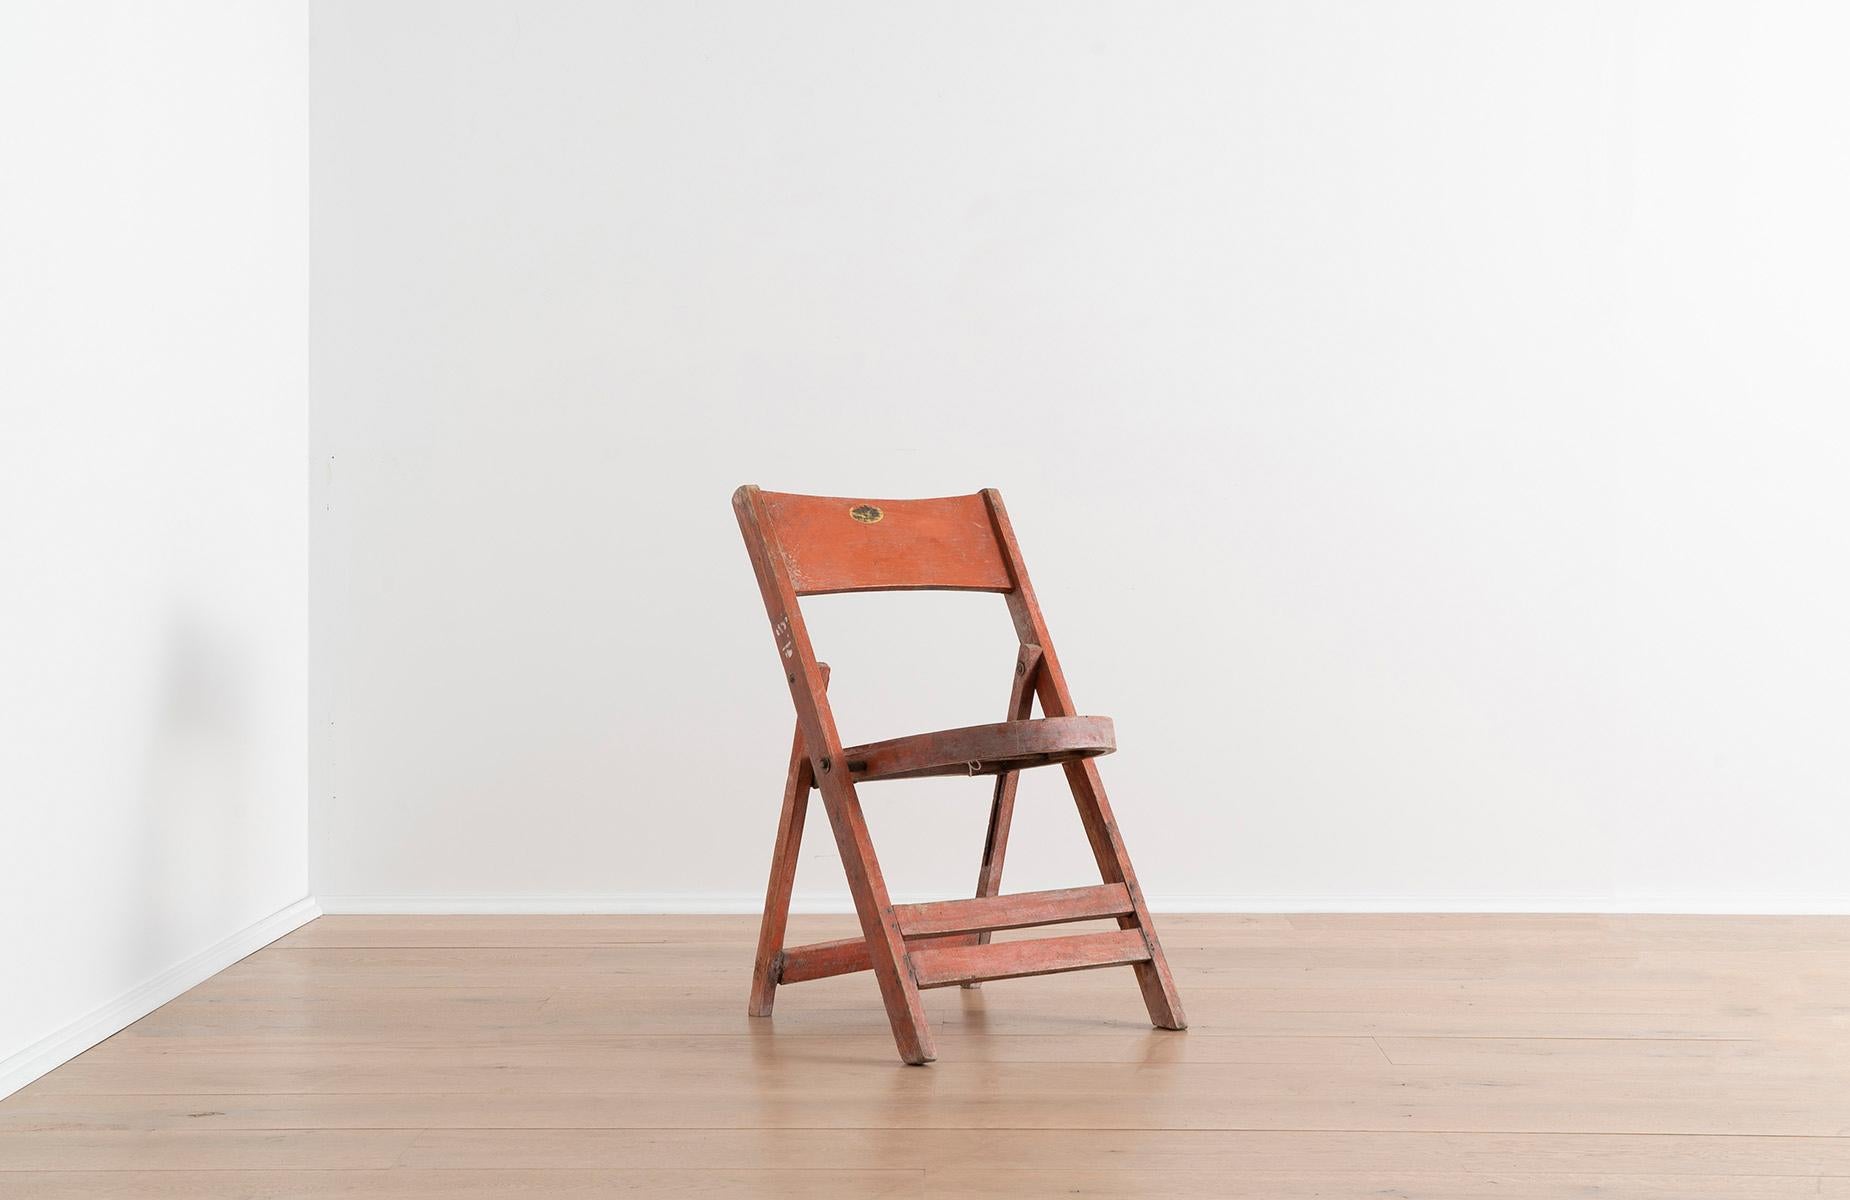 Diese orangefarbenen Holzstühle lassen sich für die Aufbewahrung perfekt flach zusammenklappen und zu einer stabilen Sitzfläche öffnen. Sie sind ein wunderbares Beispiel für einfaches, amerikanisches Design. Amerikanische Möbeldesigner haben